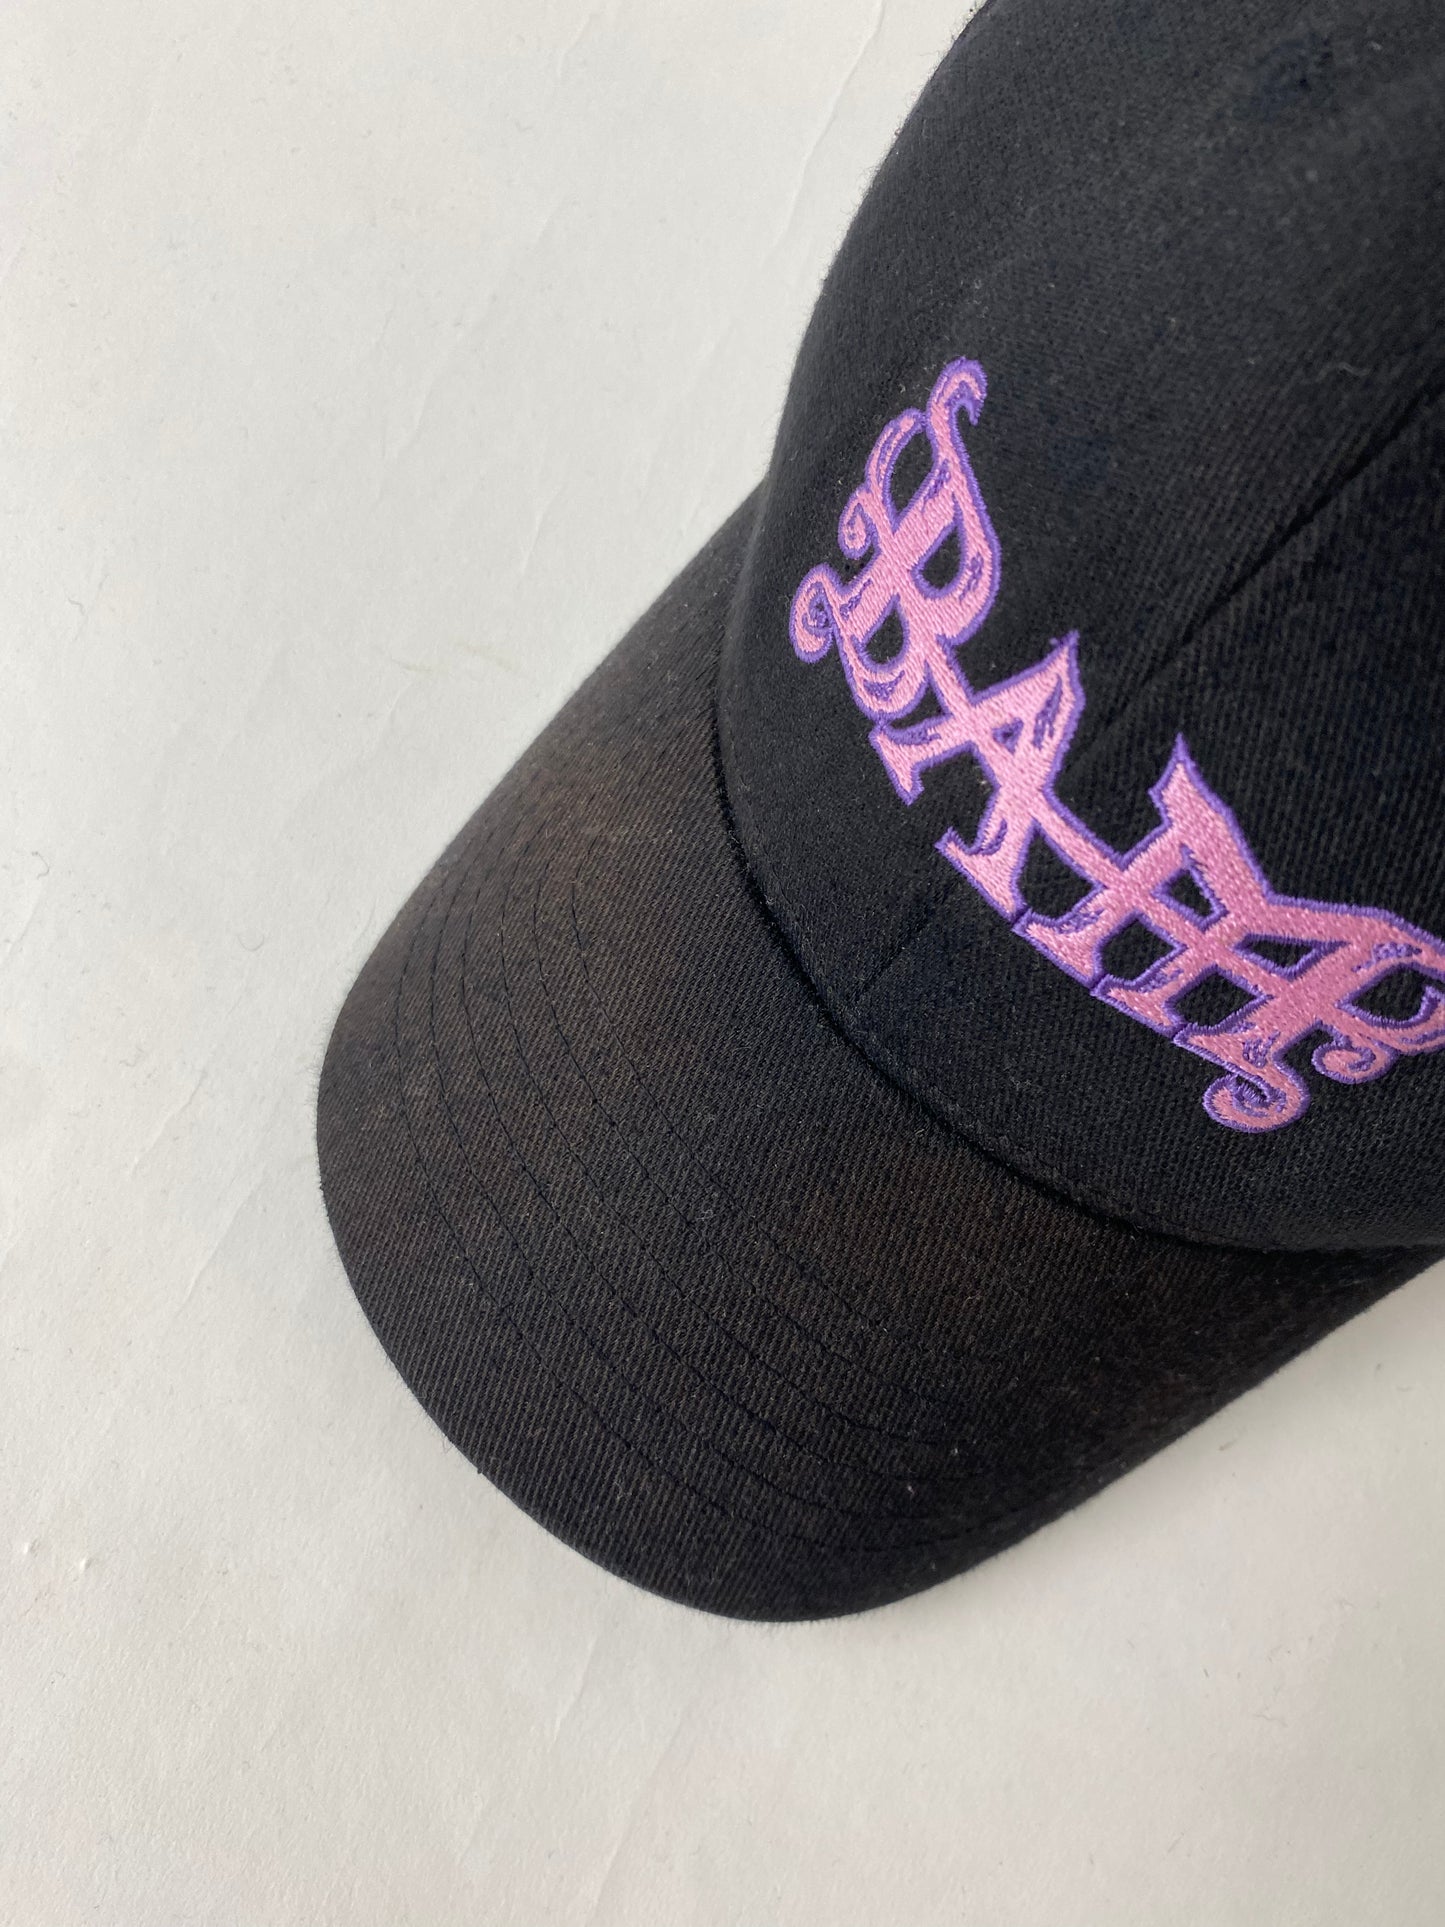 Bam Magera Element Hat Cap Adult S/M Black Flexfit Skater